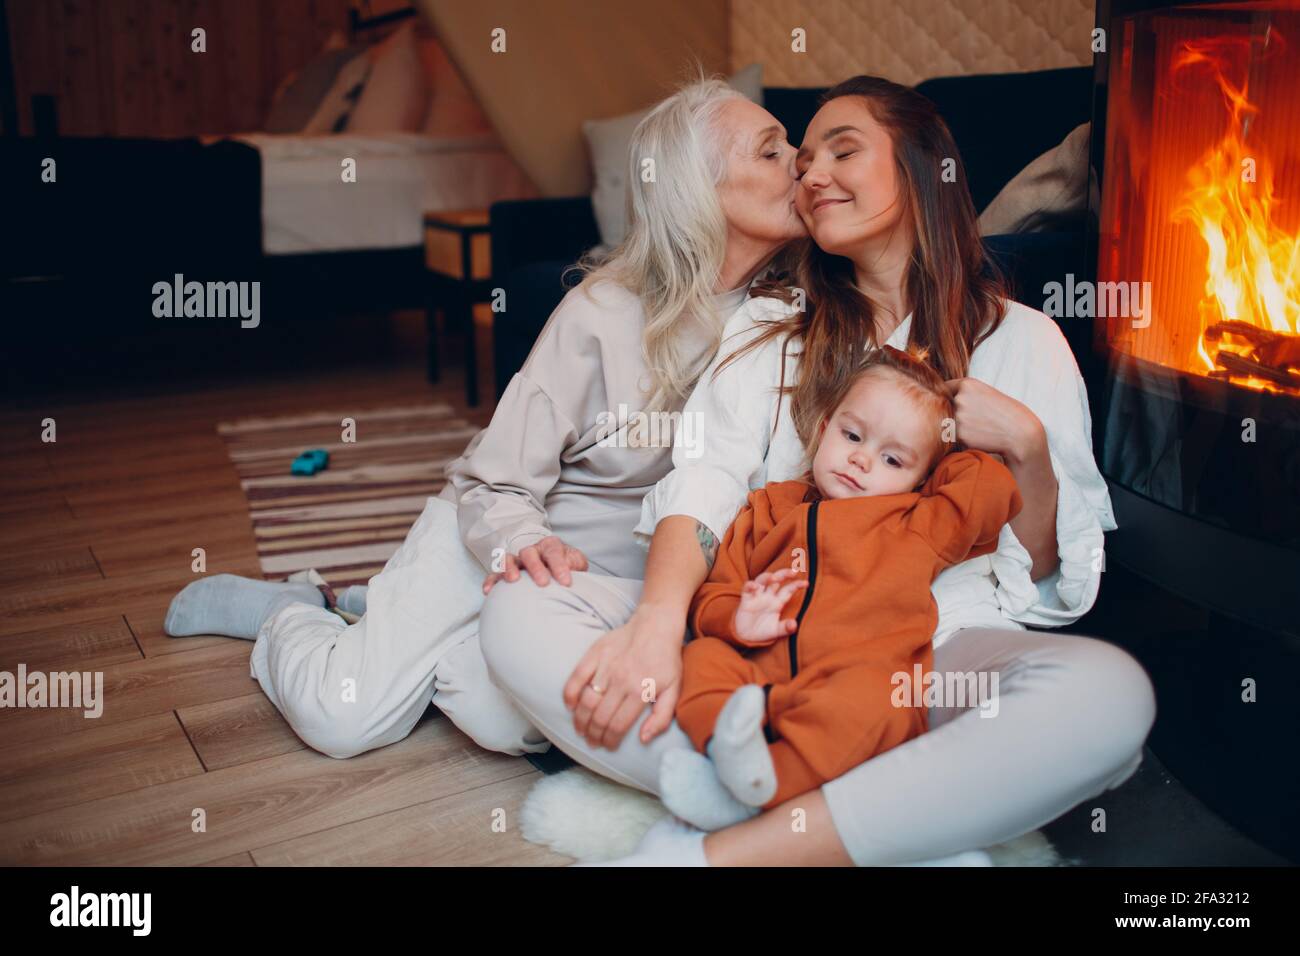 Grand-mère, mère et enfant embrassant et jouant sur le canapé près de la cheminée. Maman et bébé. Un parent avec sa fille et son petit-fils, un petit enfant qui se détend à la maison. Famille s'amuser ensemble. Fête des mères Banque D'Images